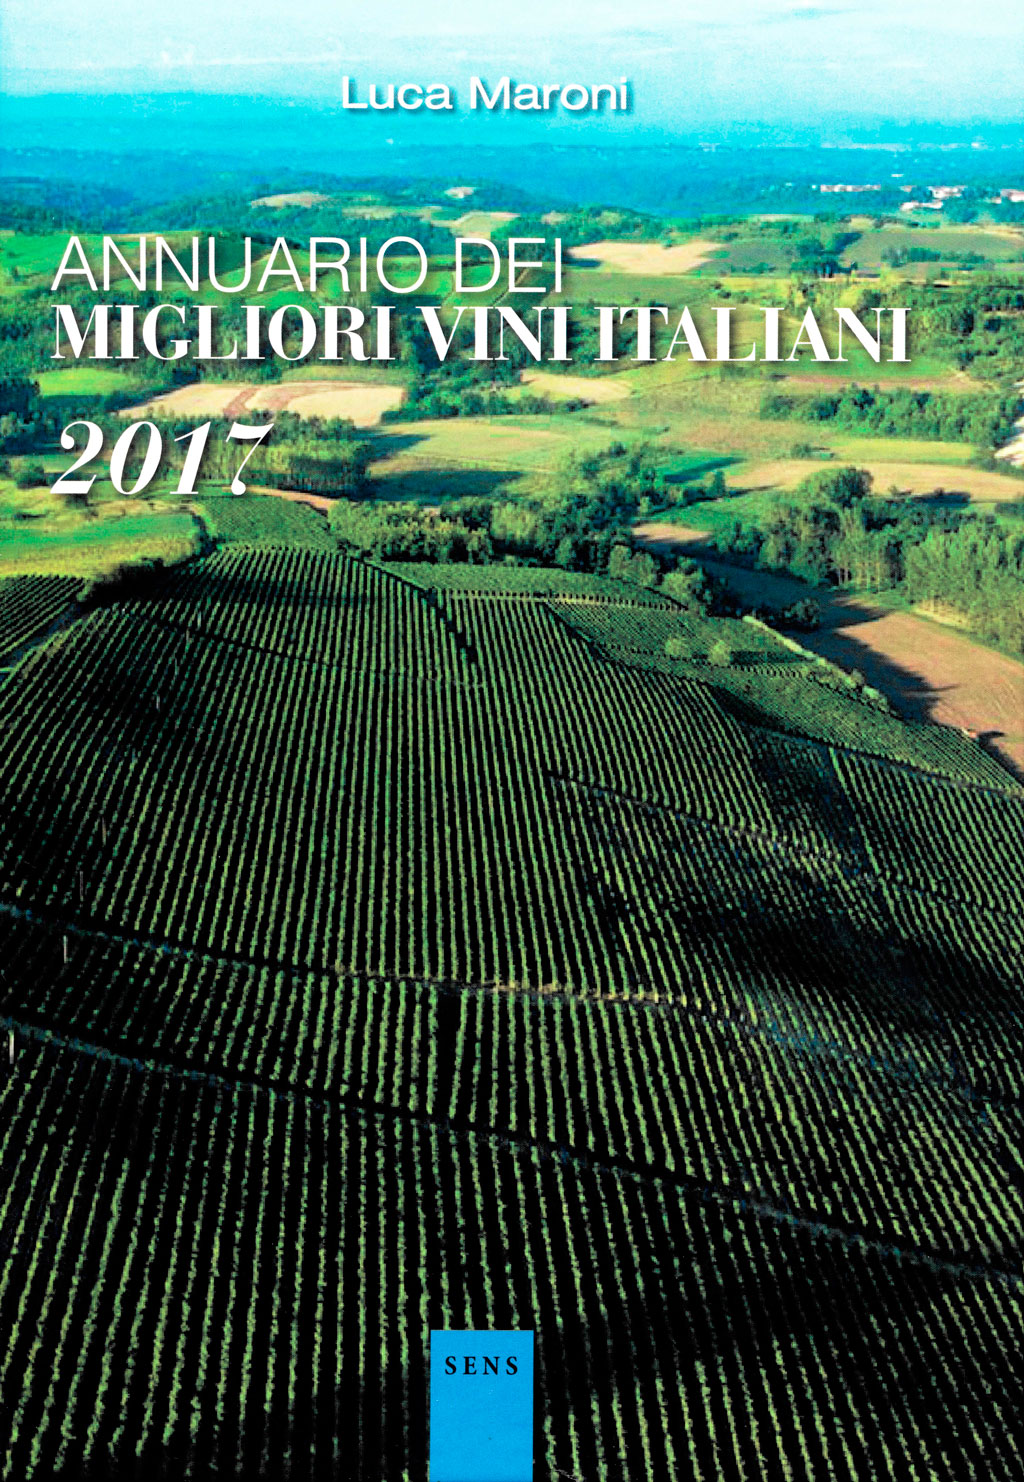 Annuario dei migliori vini italiani 2017 - Luca Maroni